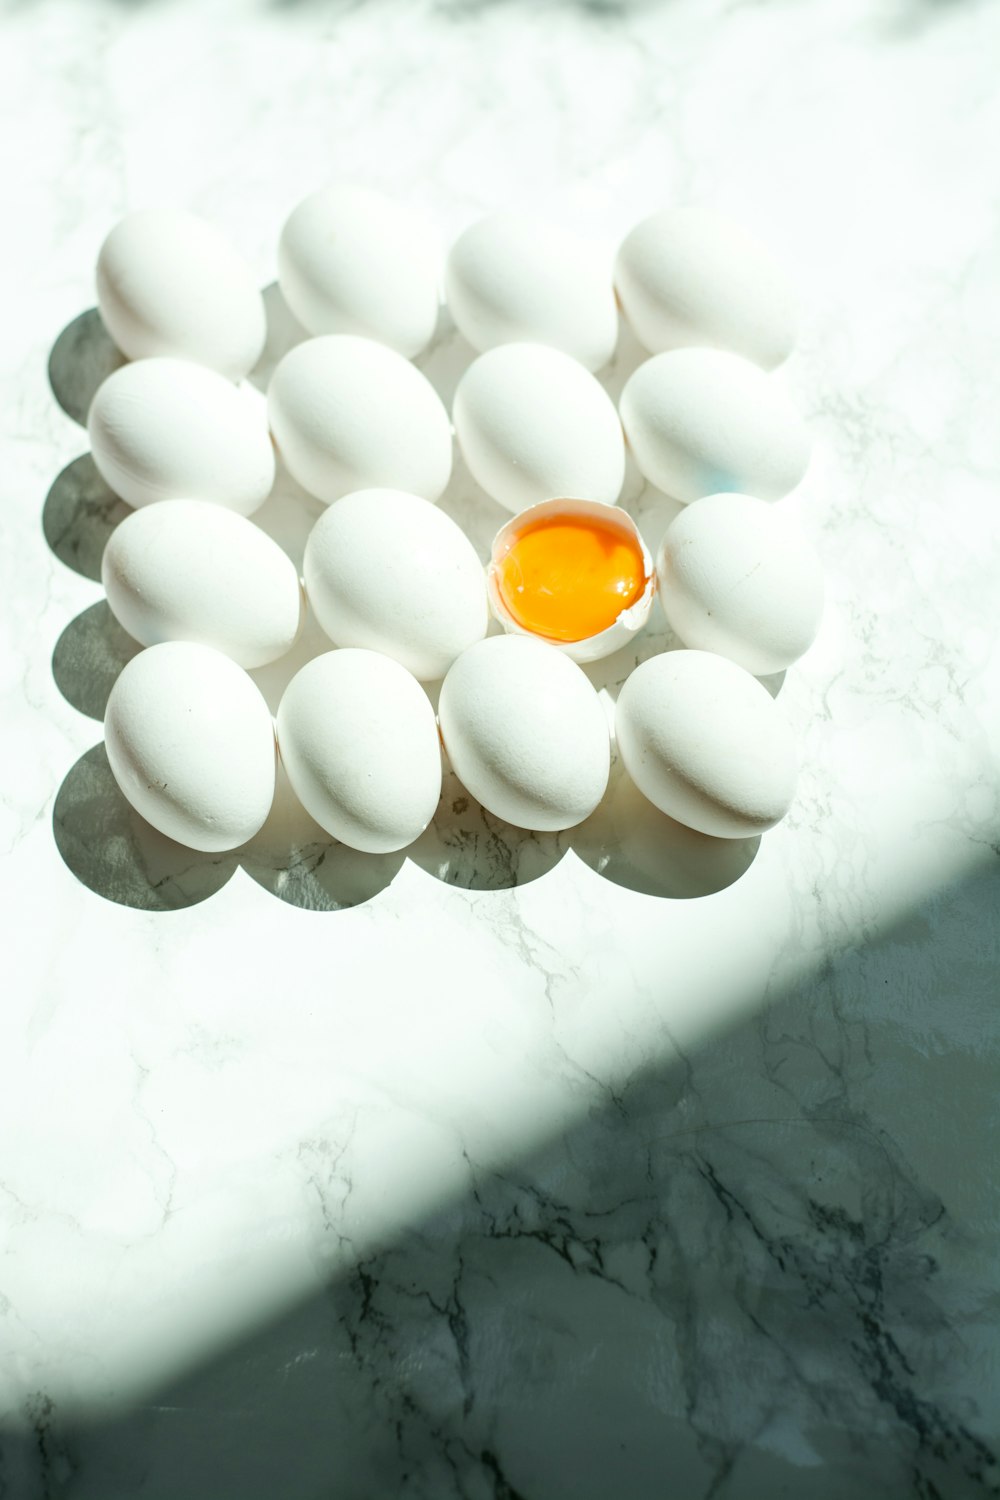 white eggs on white surface